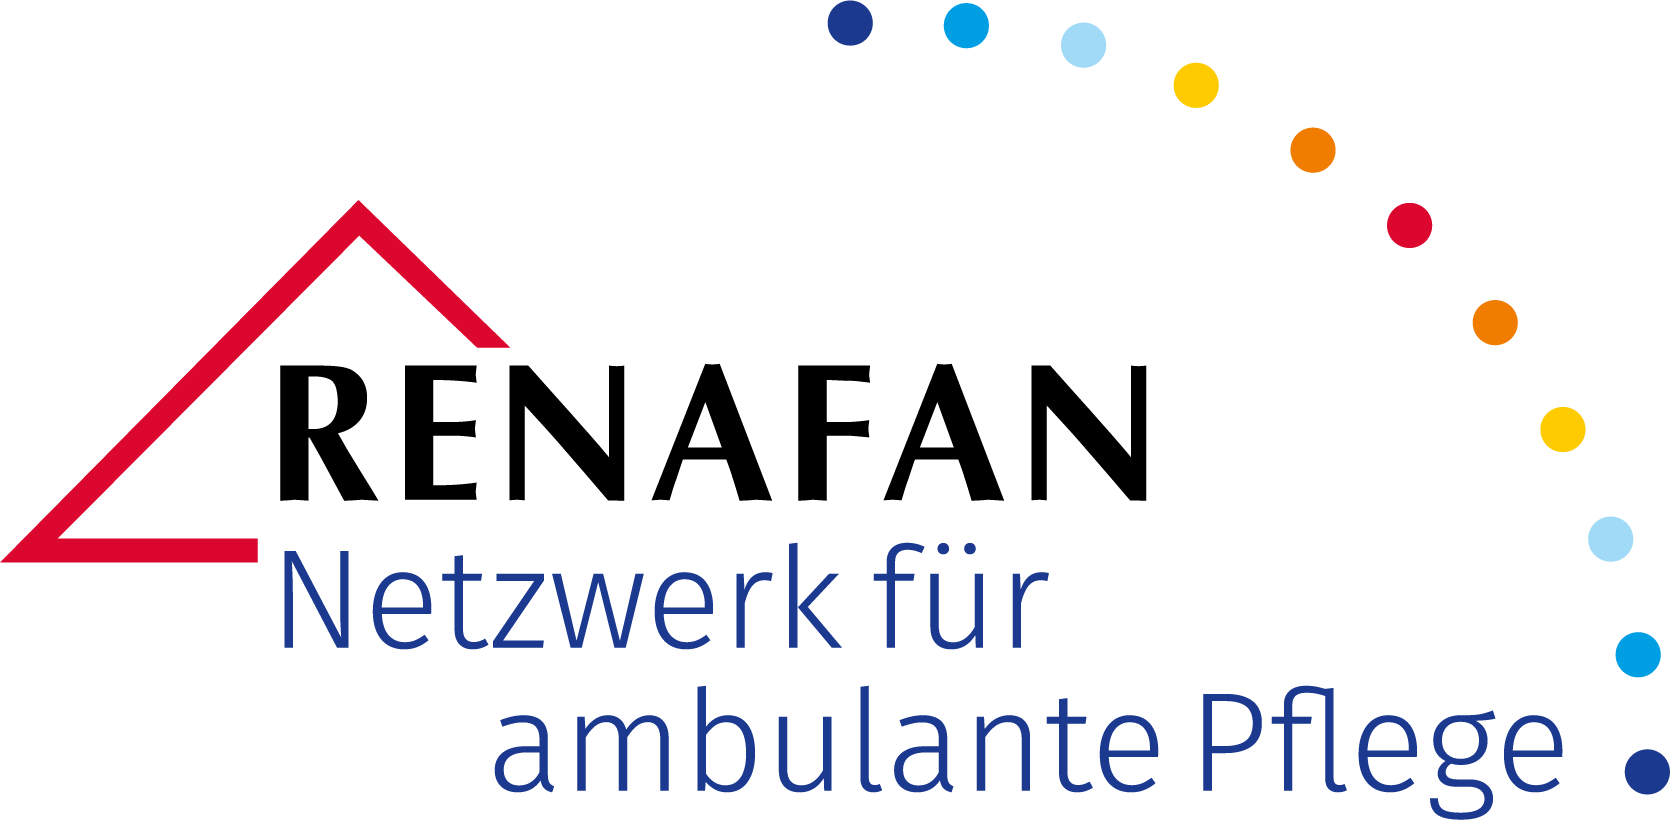 RENAFAN Netzwerk für ambulante Pflege